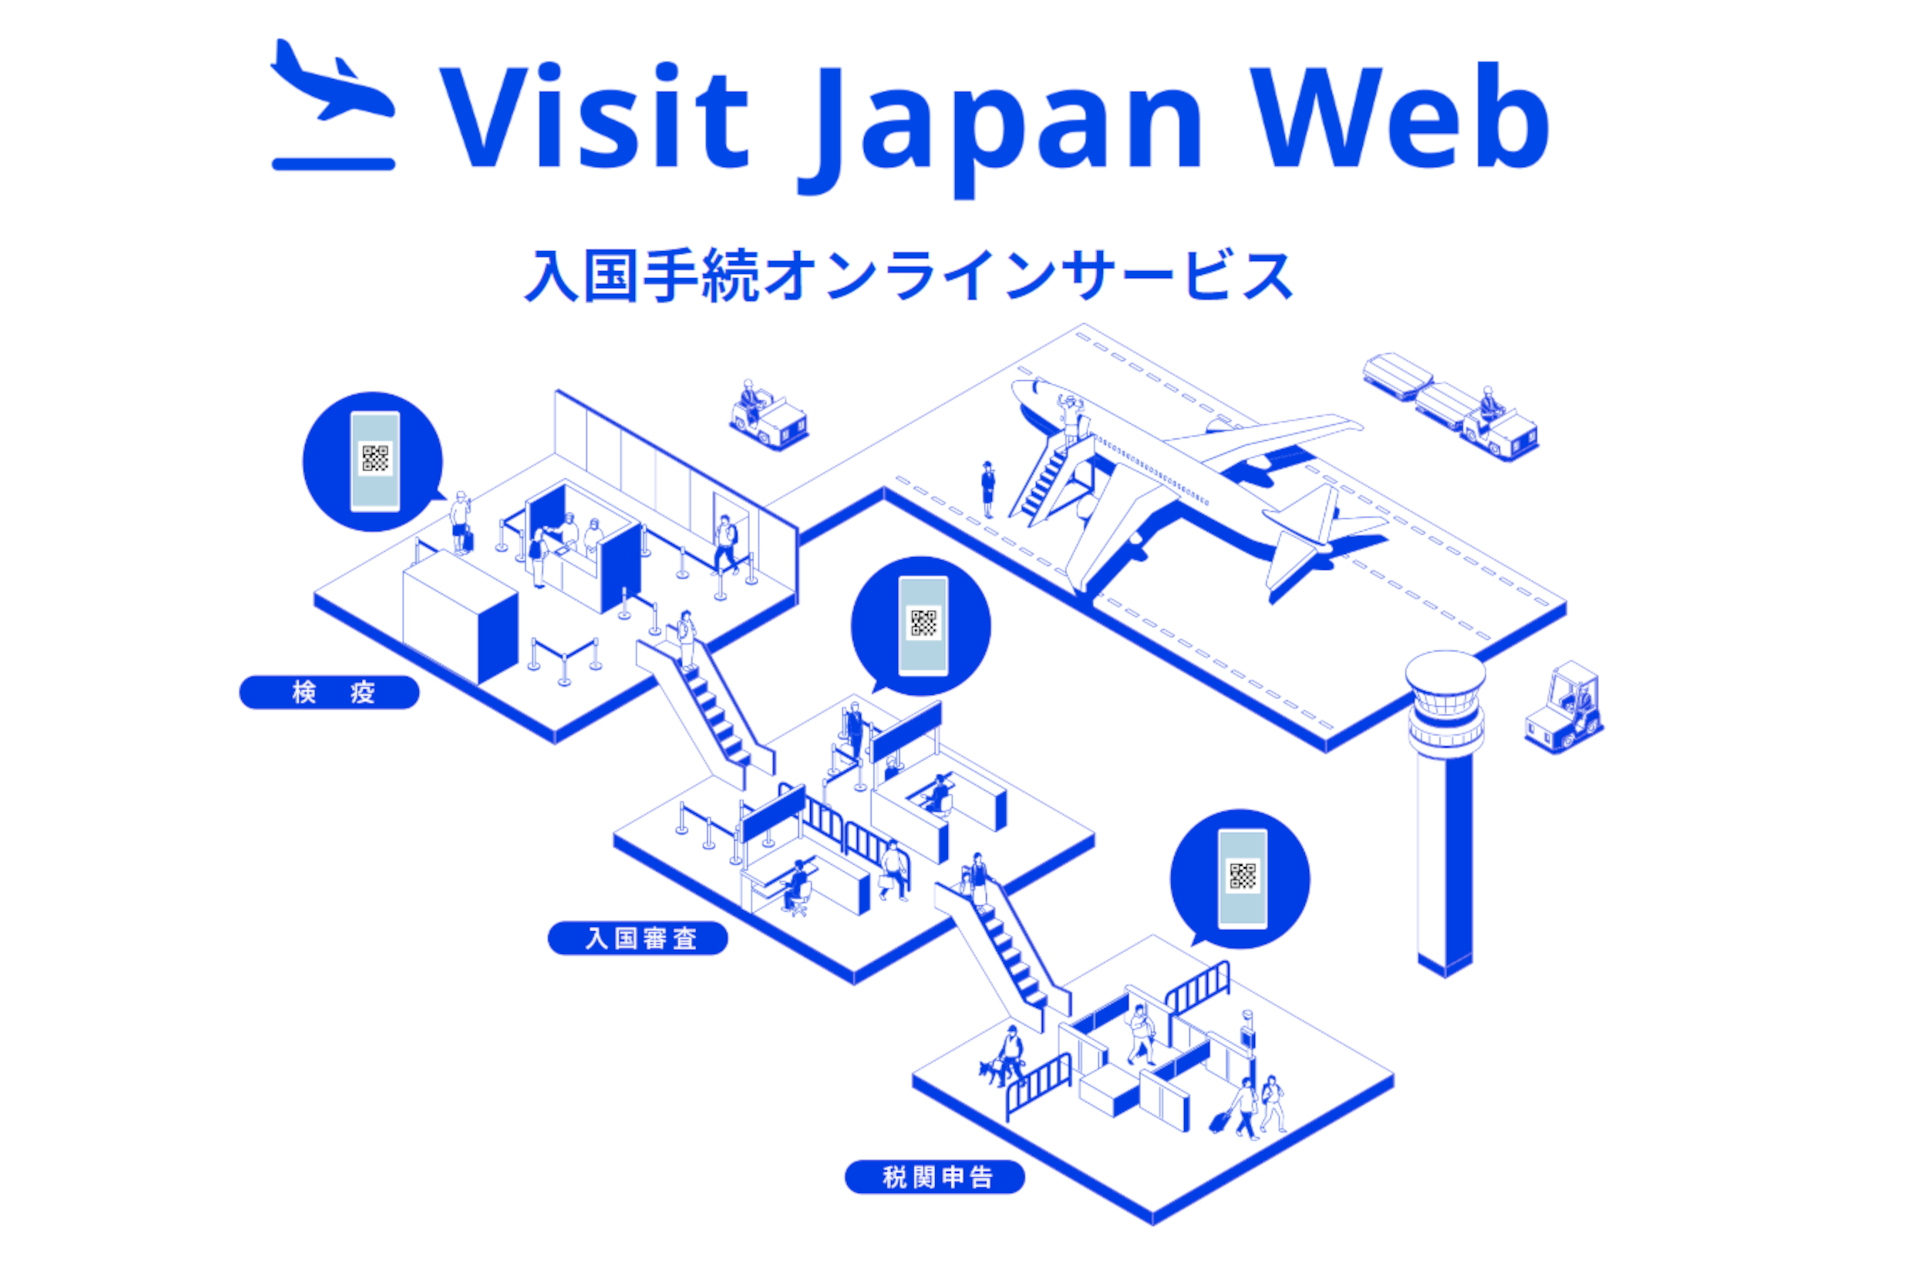 デジタル庁、入国手続きサービス「Visit Japan Web」を11月1日より